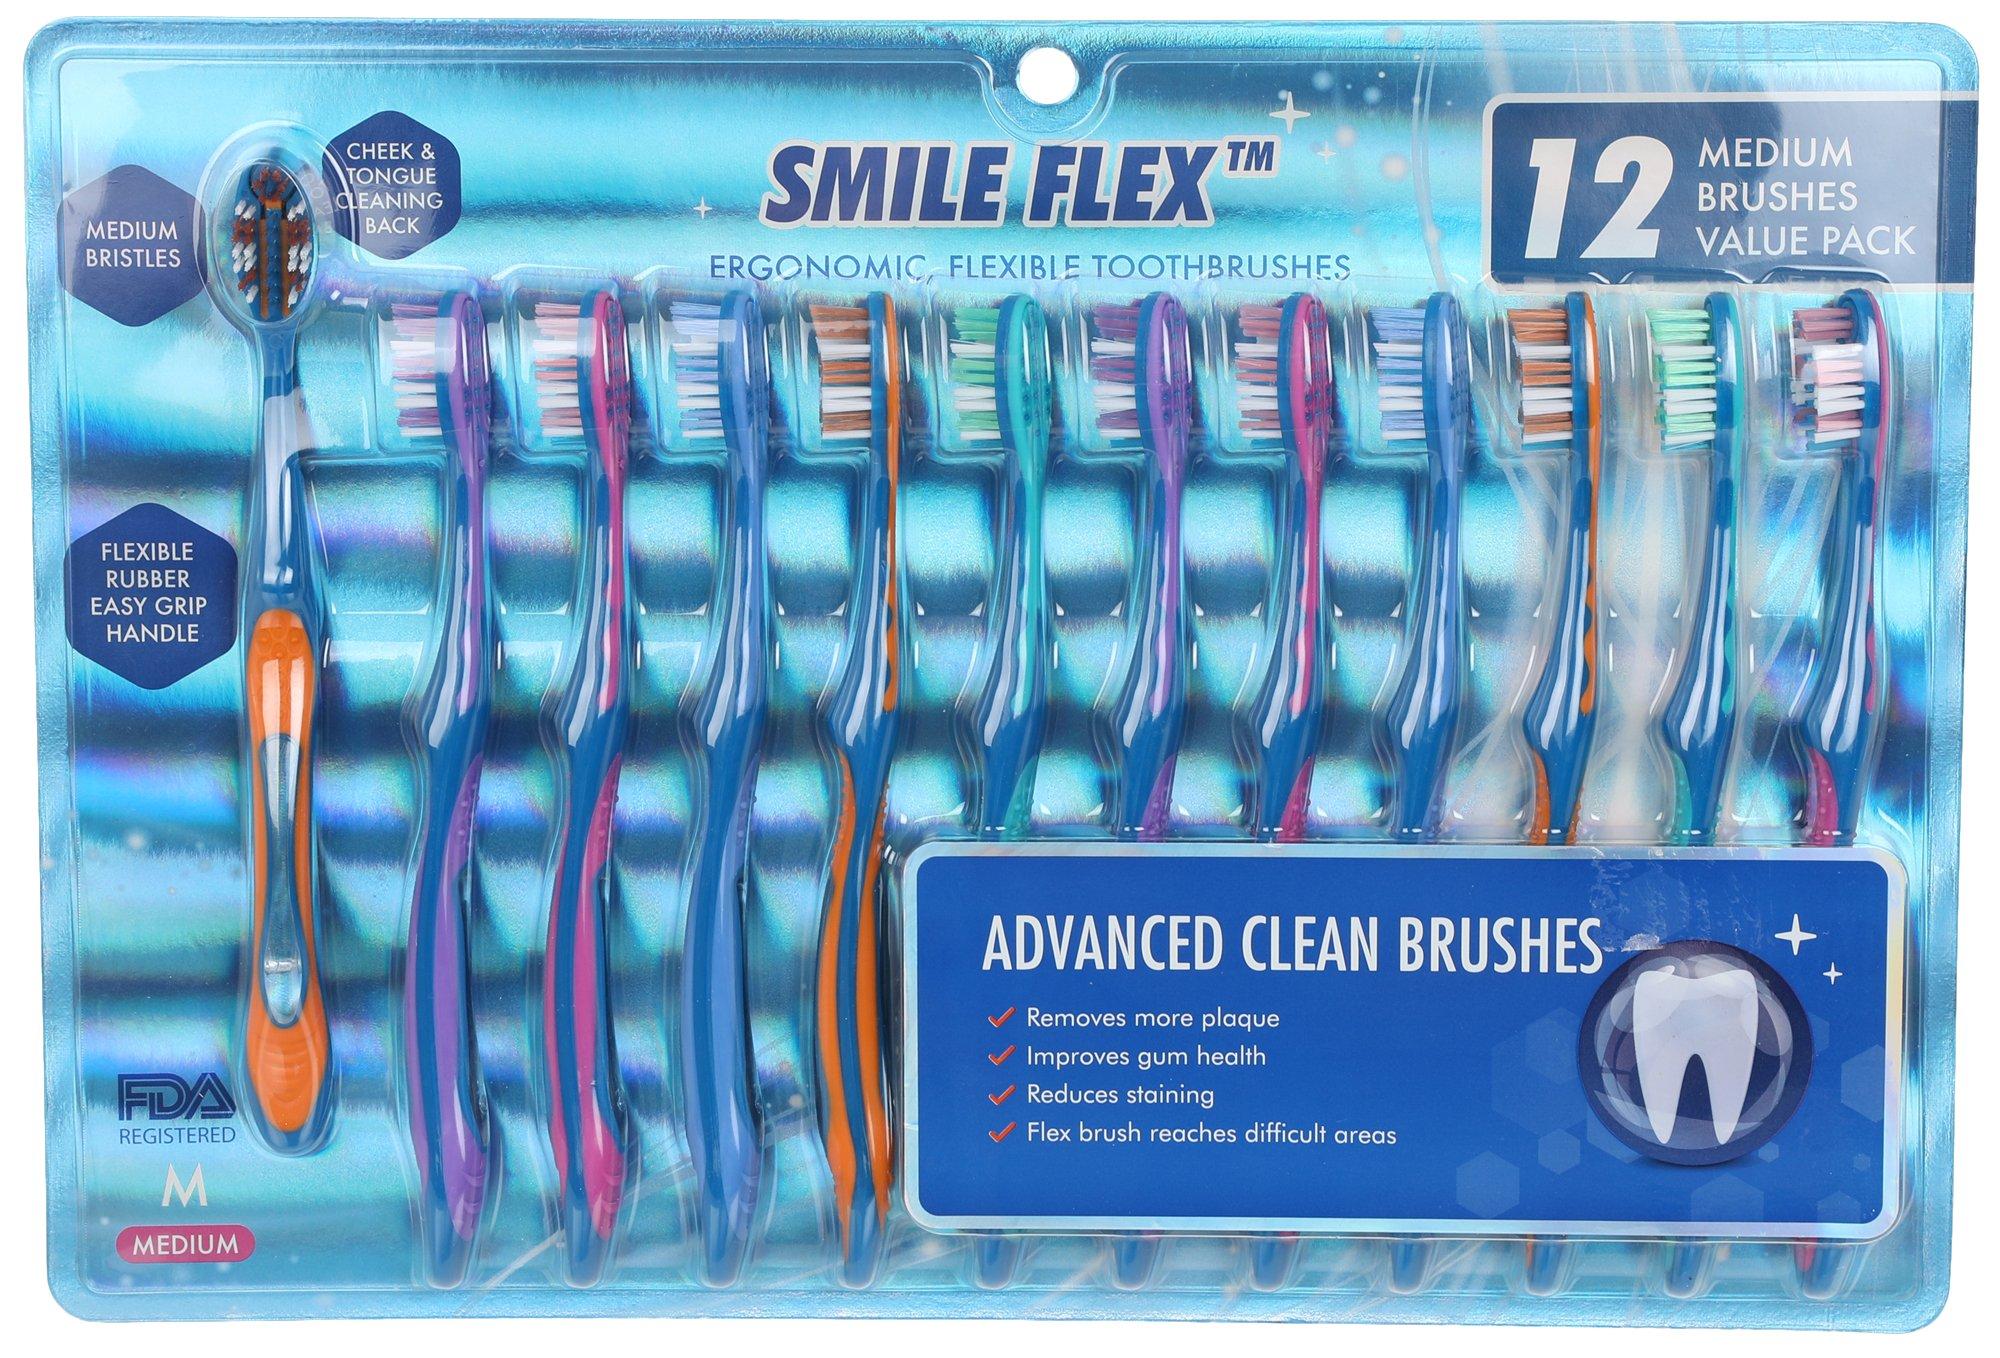 12 Pk Medium Toothbrushes